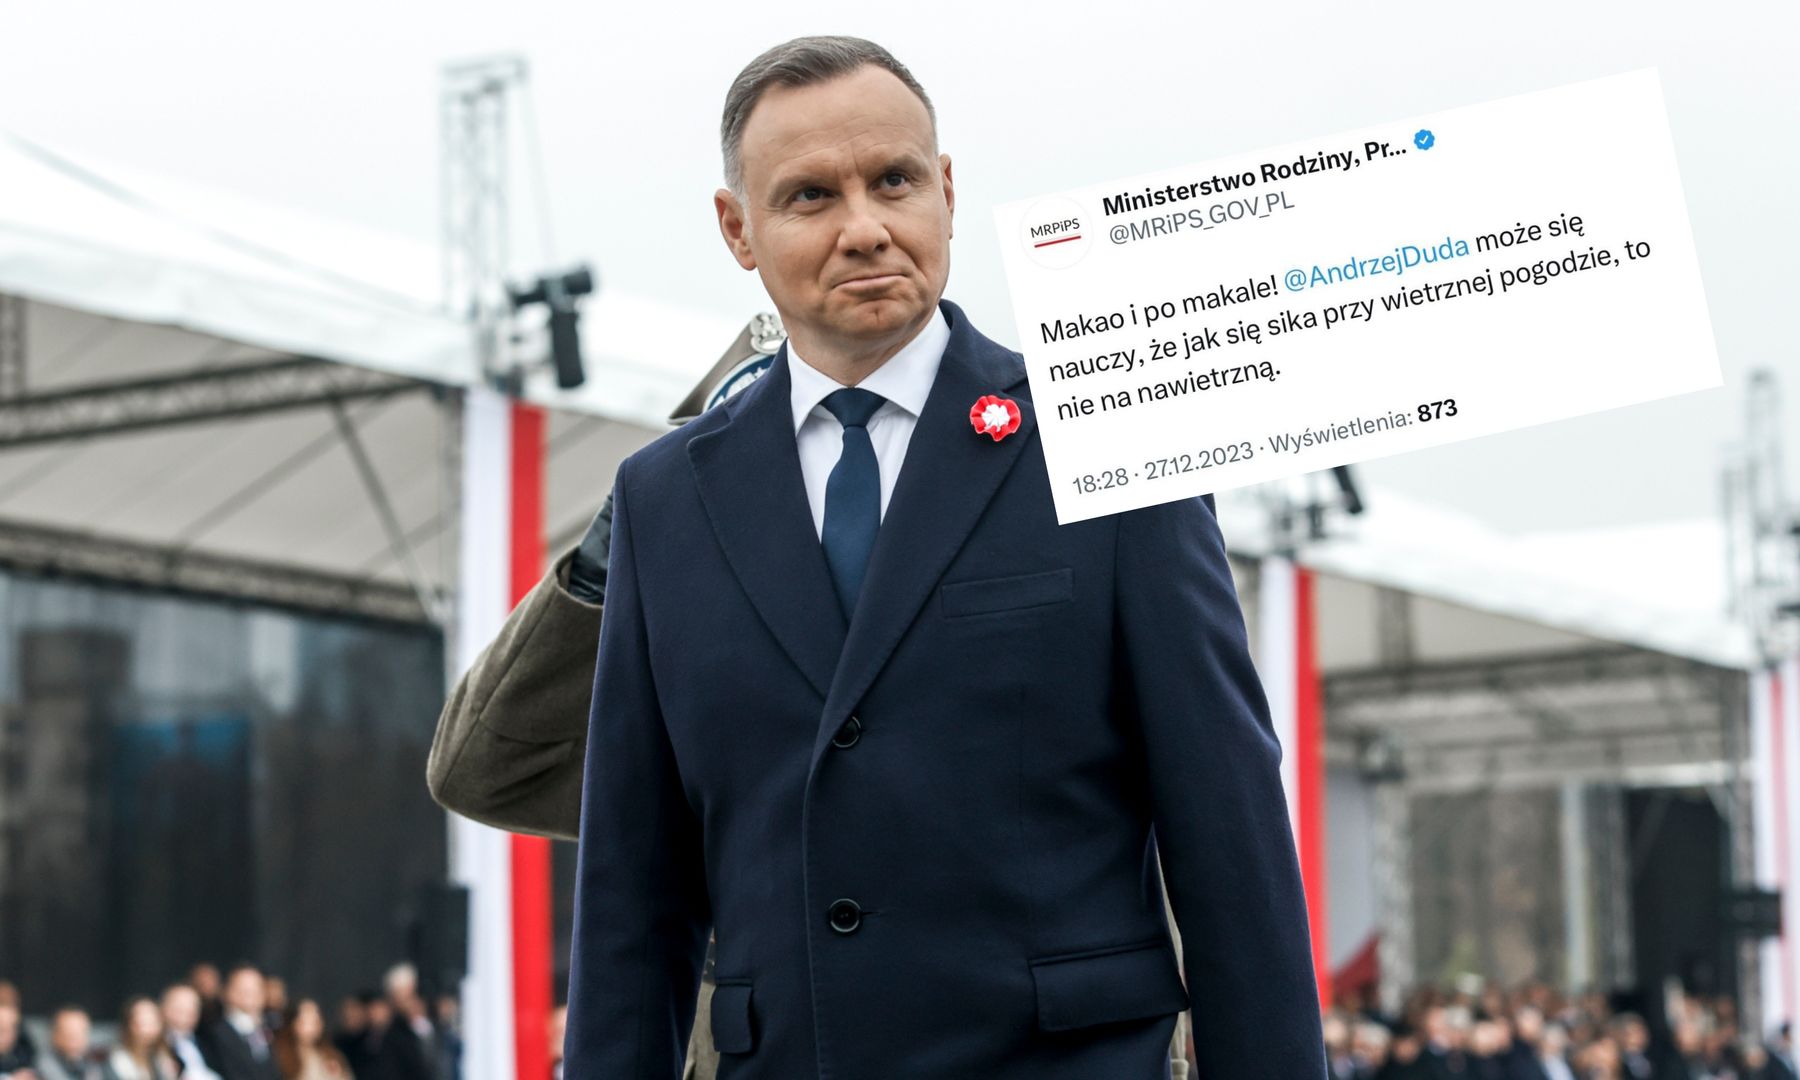 Wpadka Ministerstwa Rodziny: "Andrzej Duda może się nauczy". W Internecie nic nie ginie